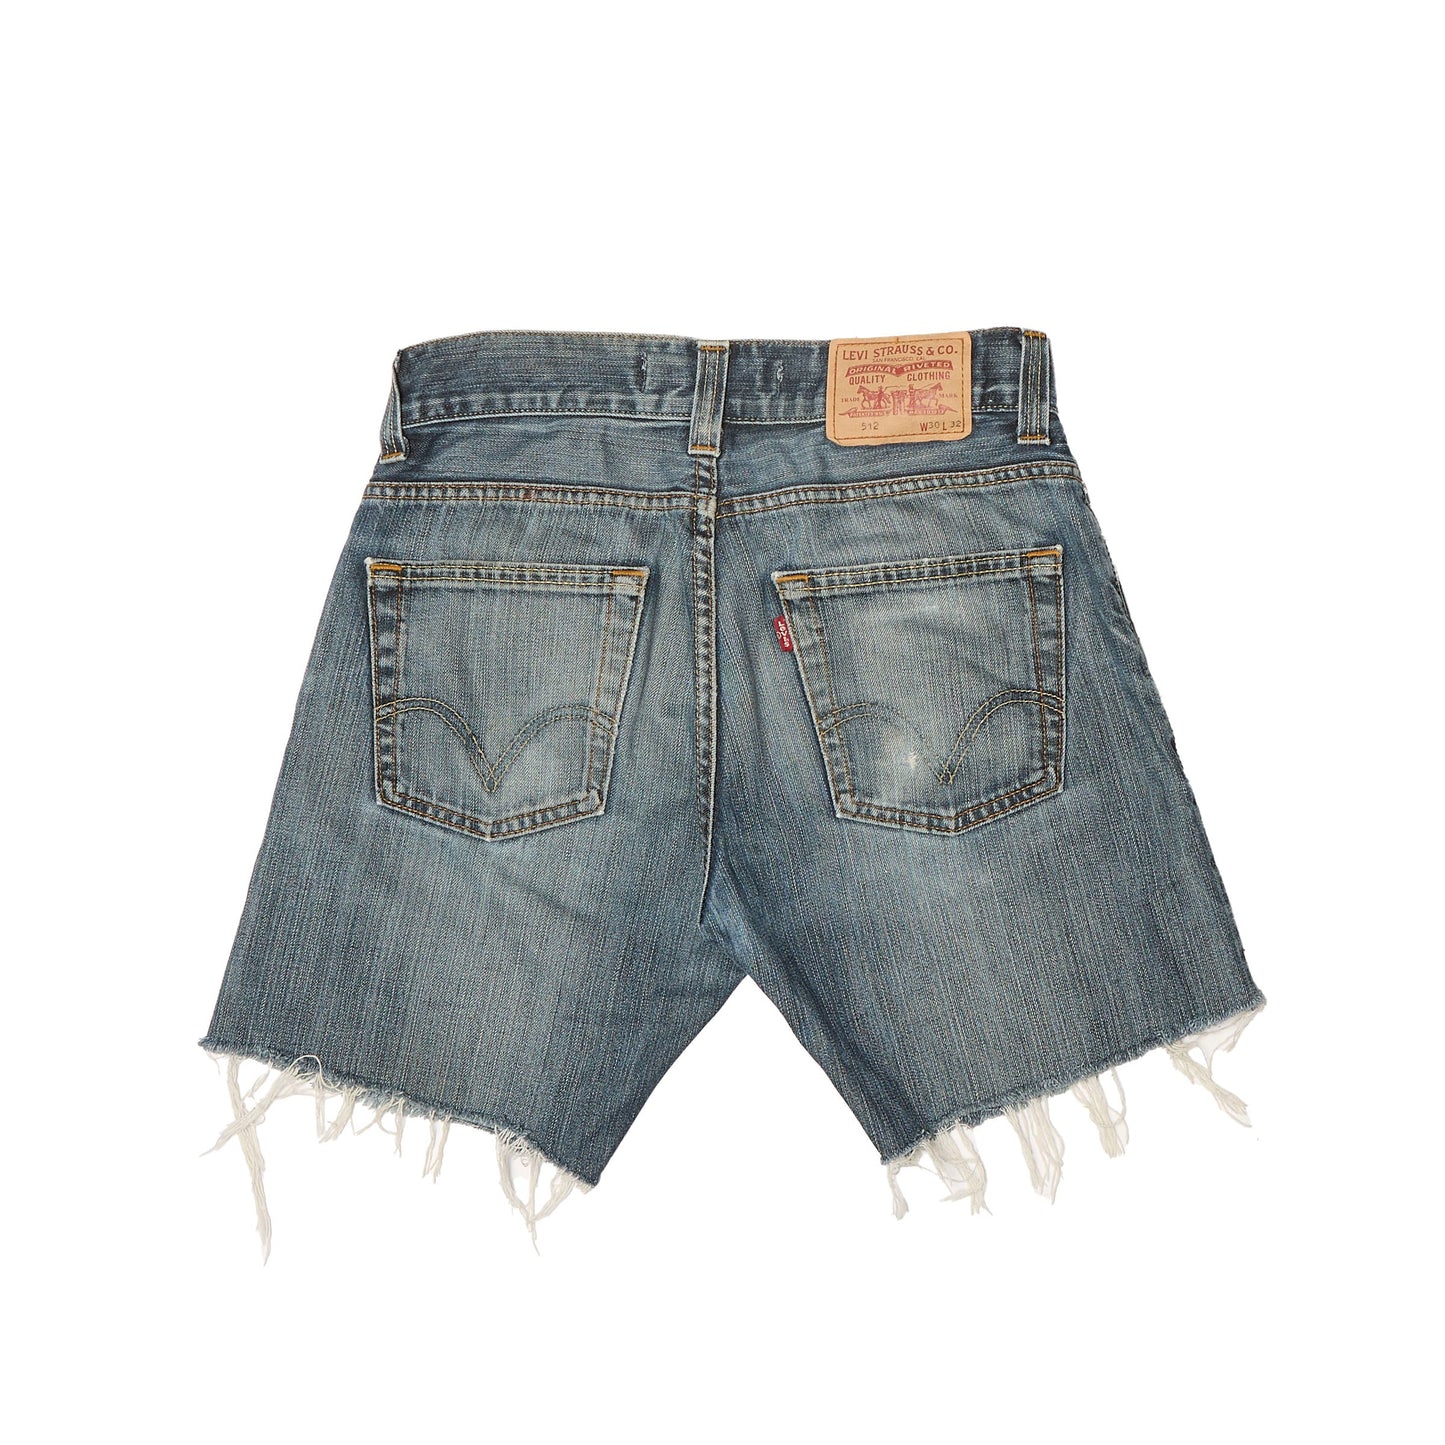 Levis Frayed Denim Jeans - UK 12